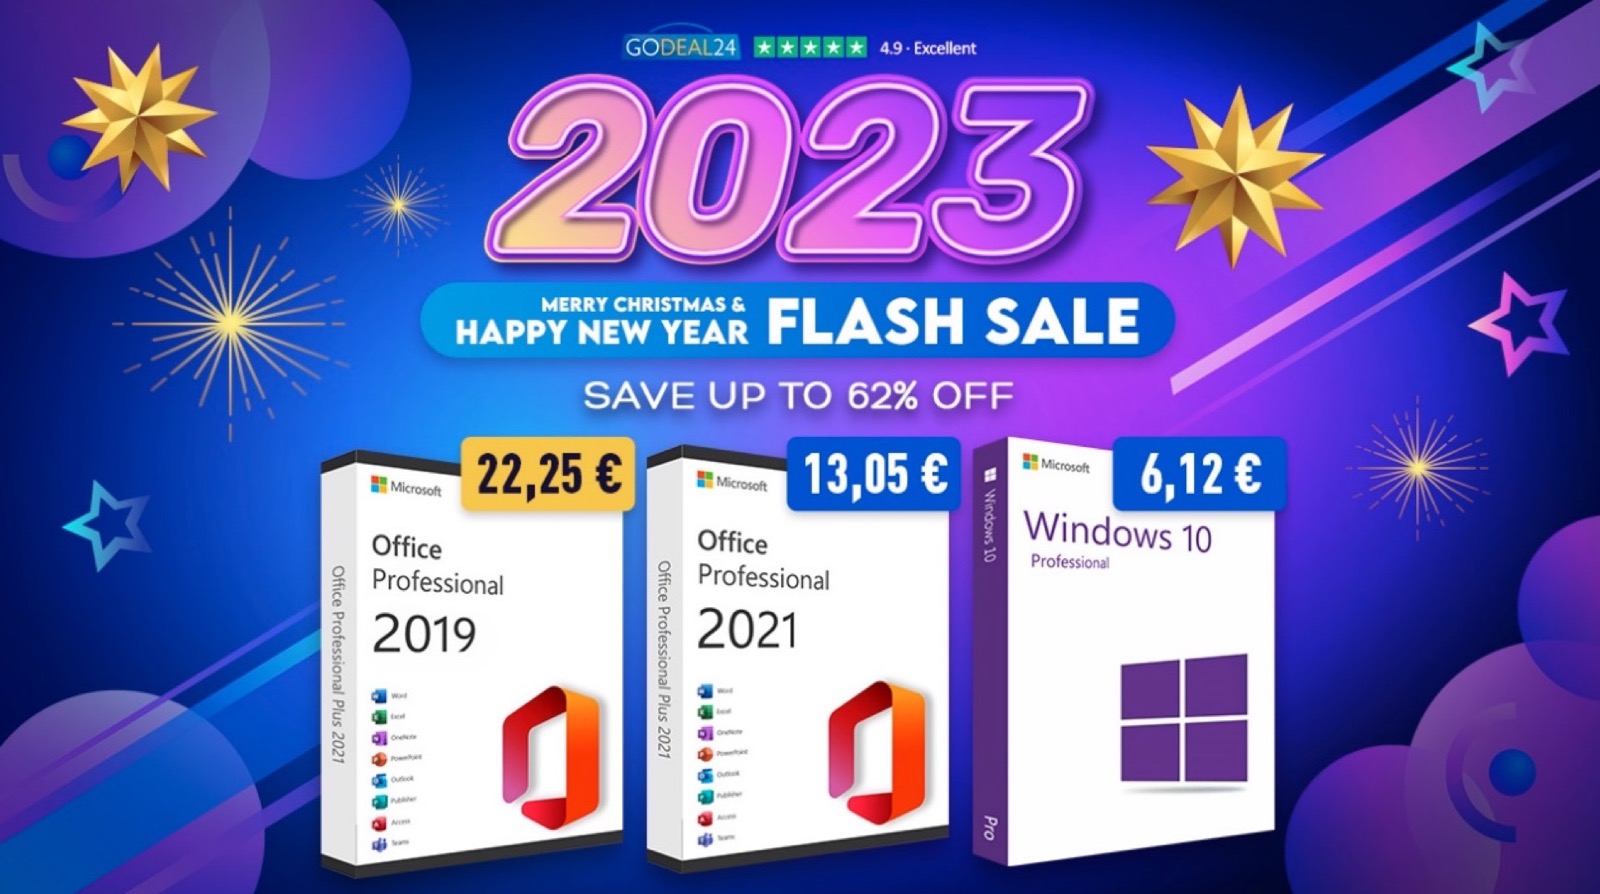 2023 col botto, Office 2021 Pro e Windows 10 a partire da 6 €